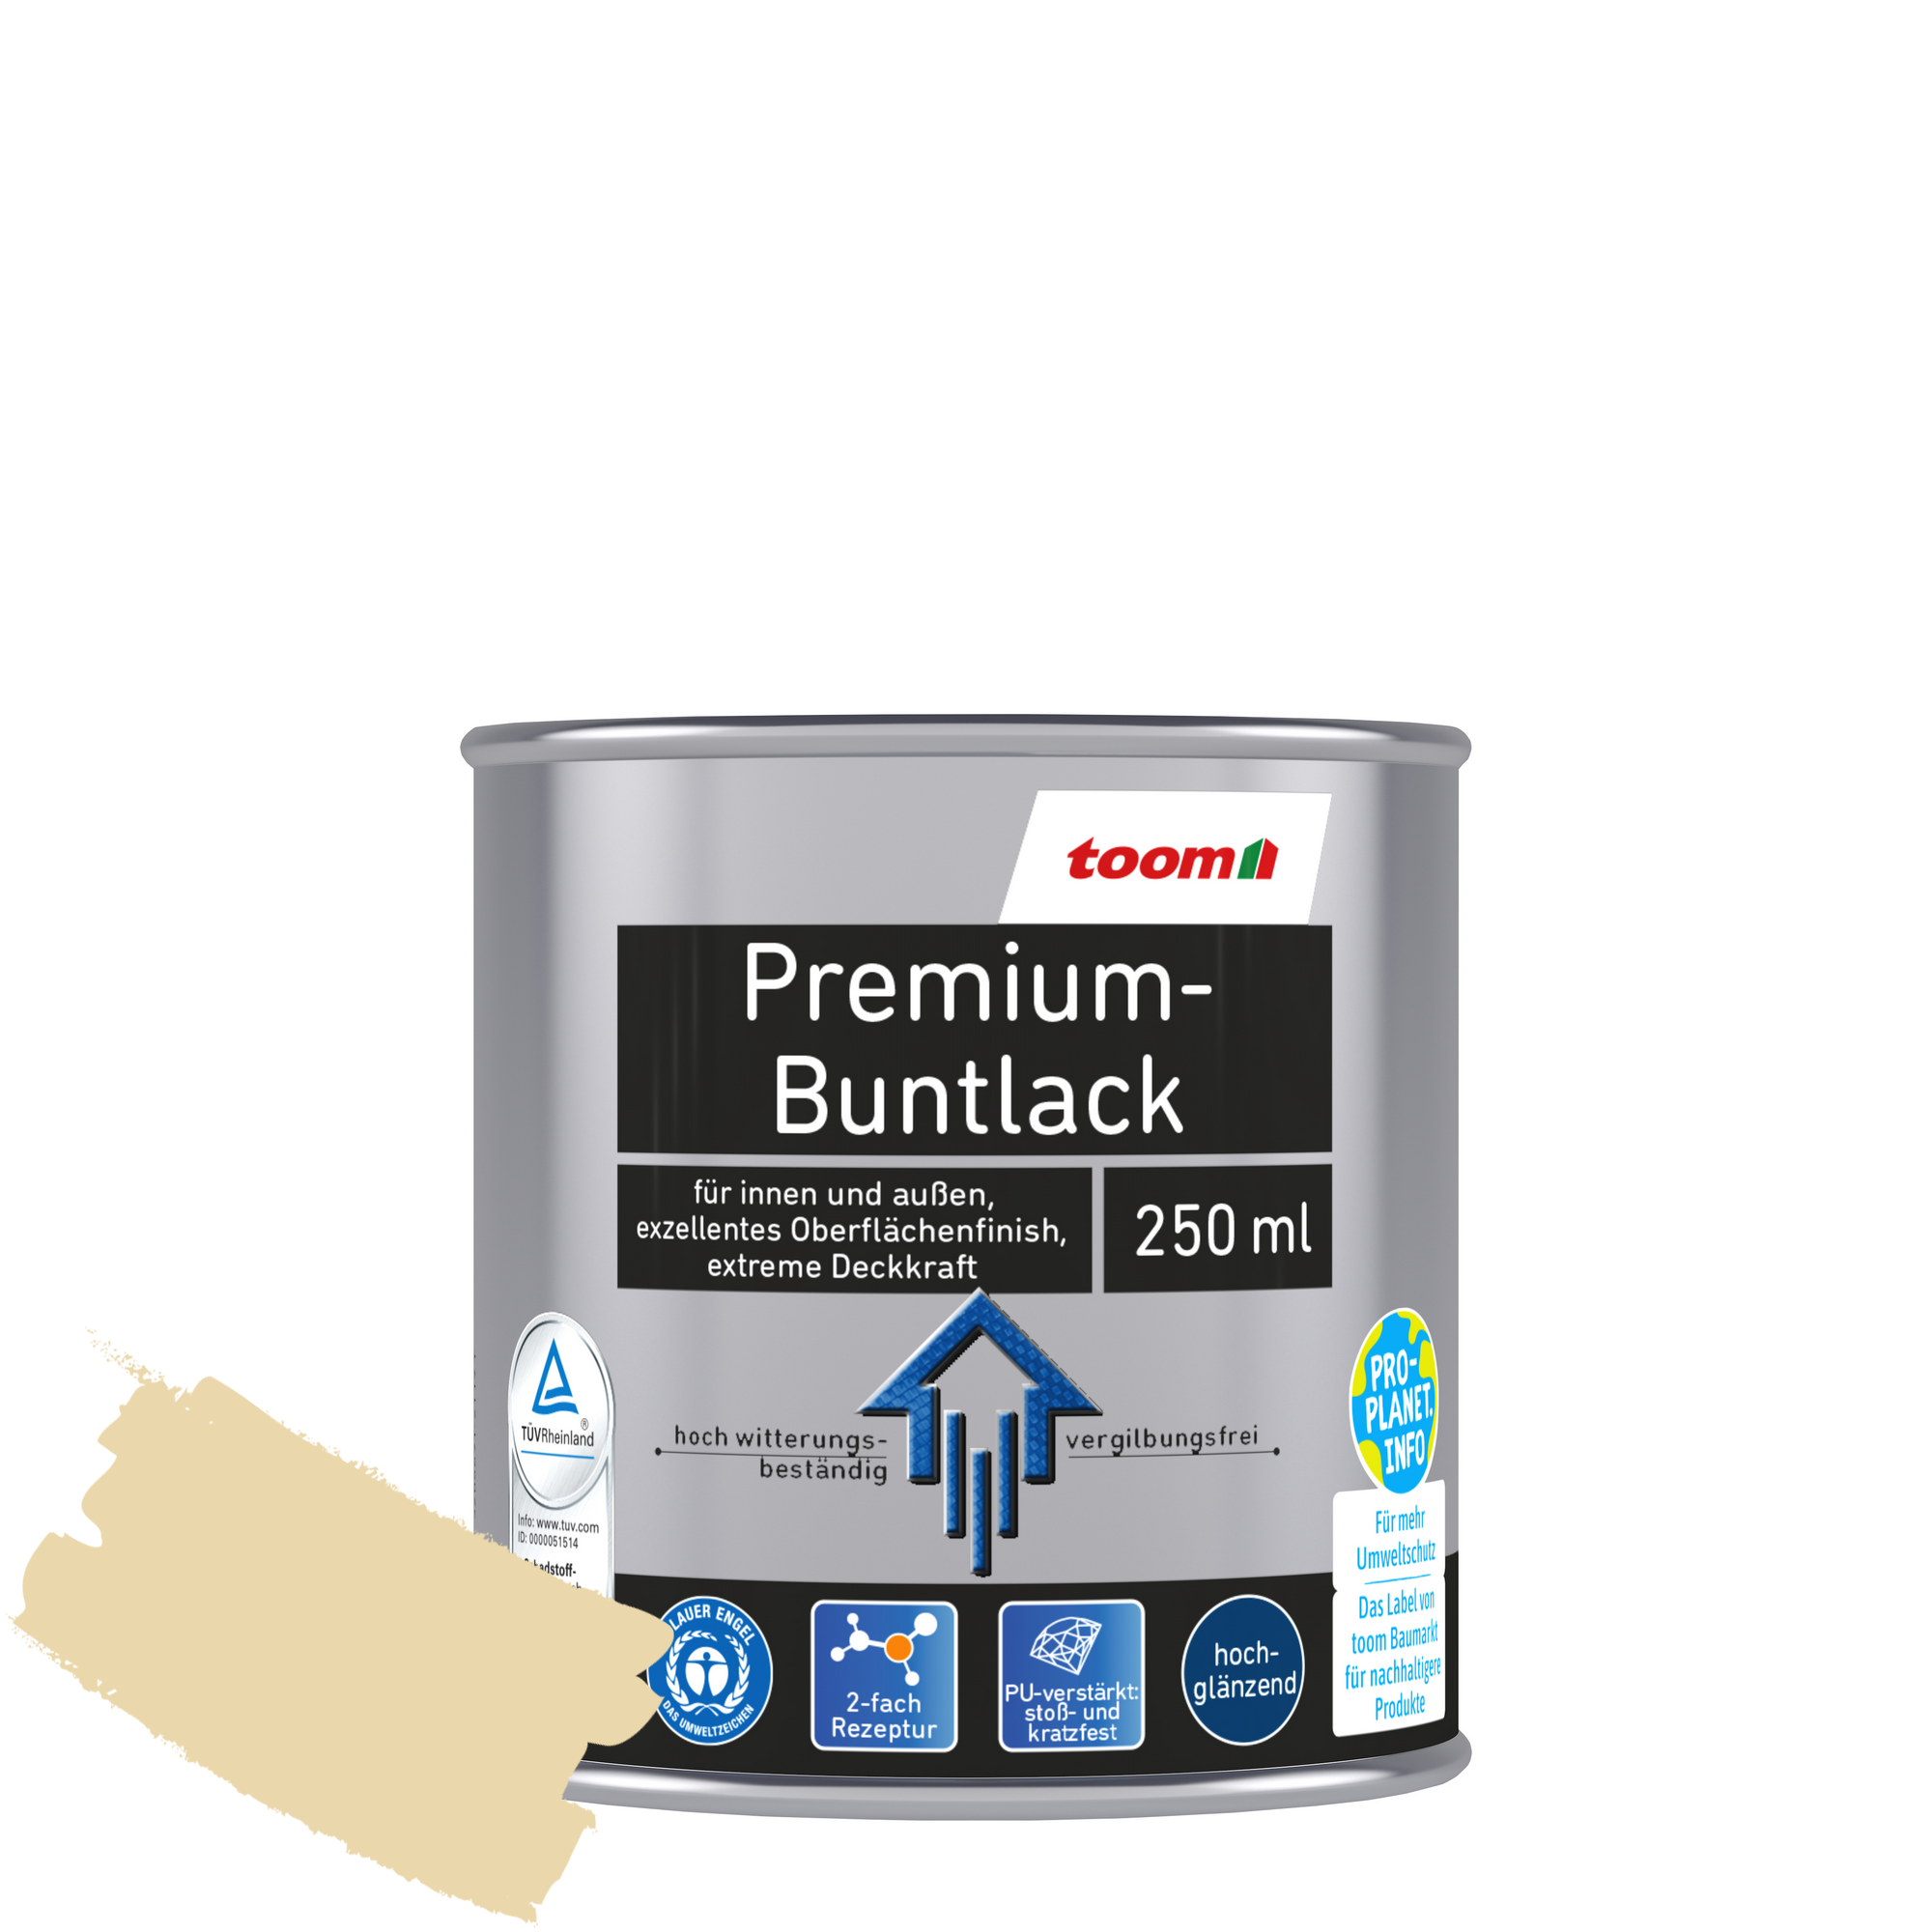 Premium-Buntlack elfenbeinfarben glänzend 250 ml + product picture